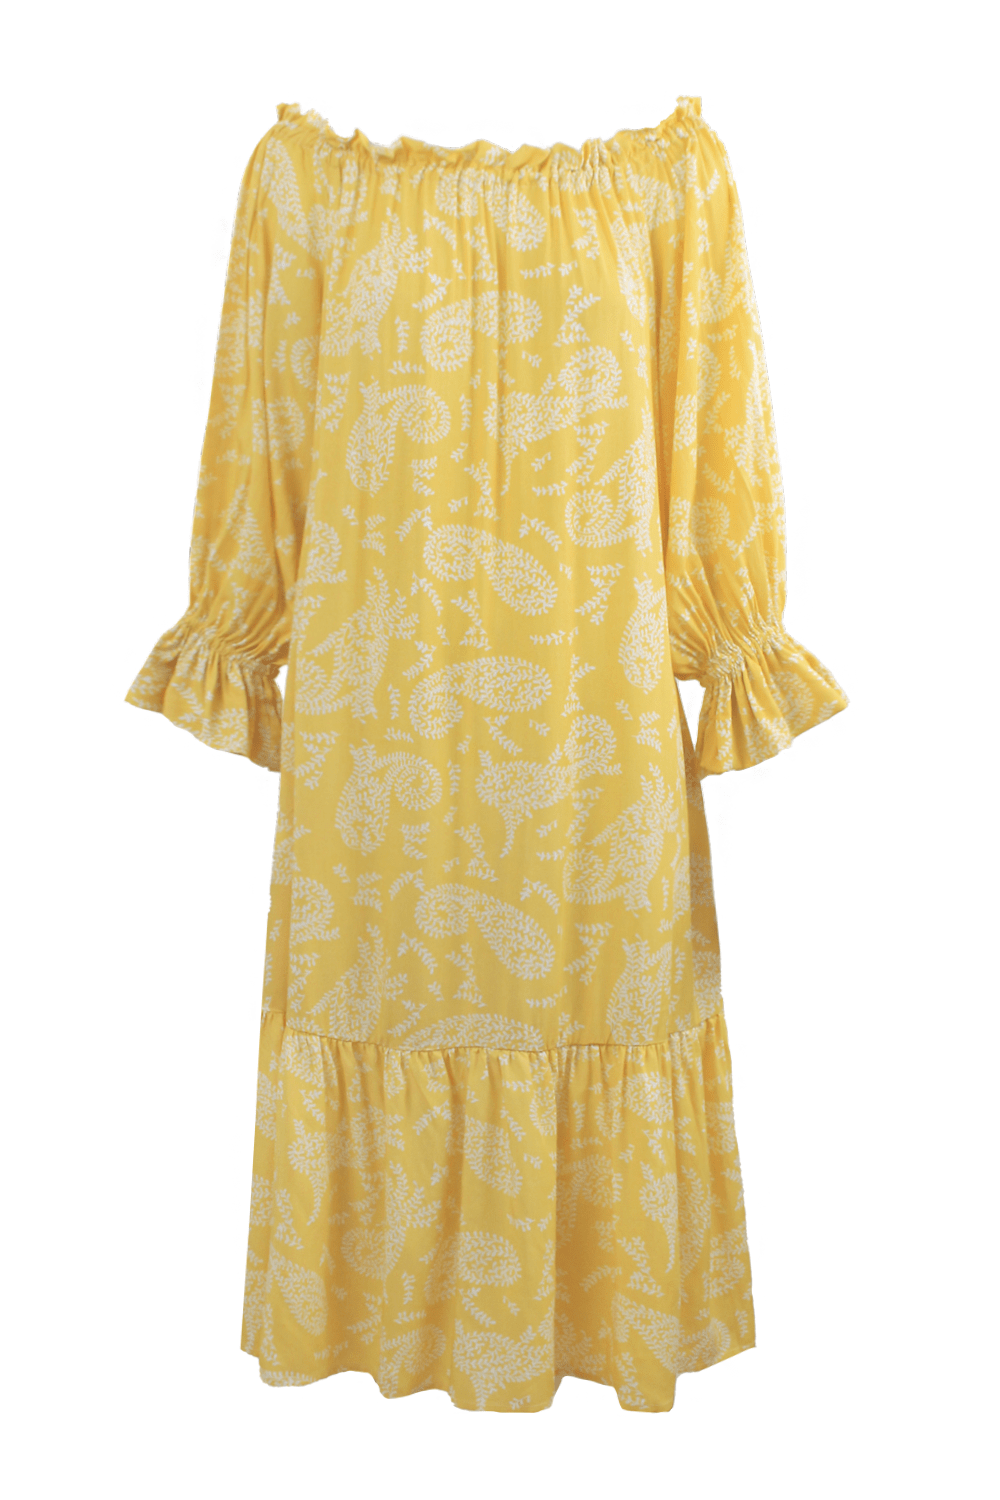 Paisley Dress in Lemon Dress